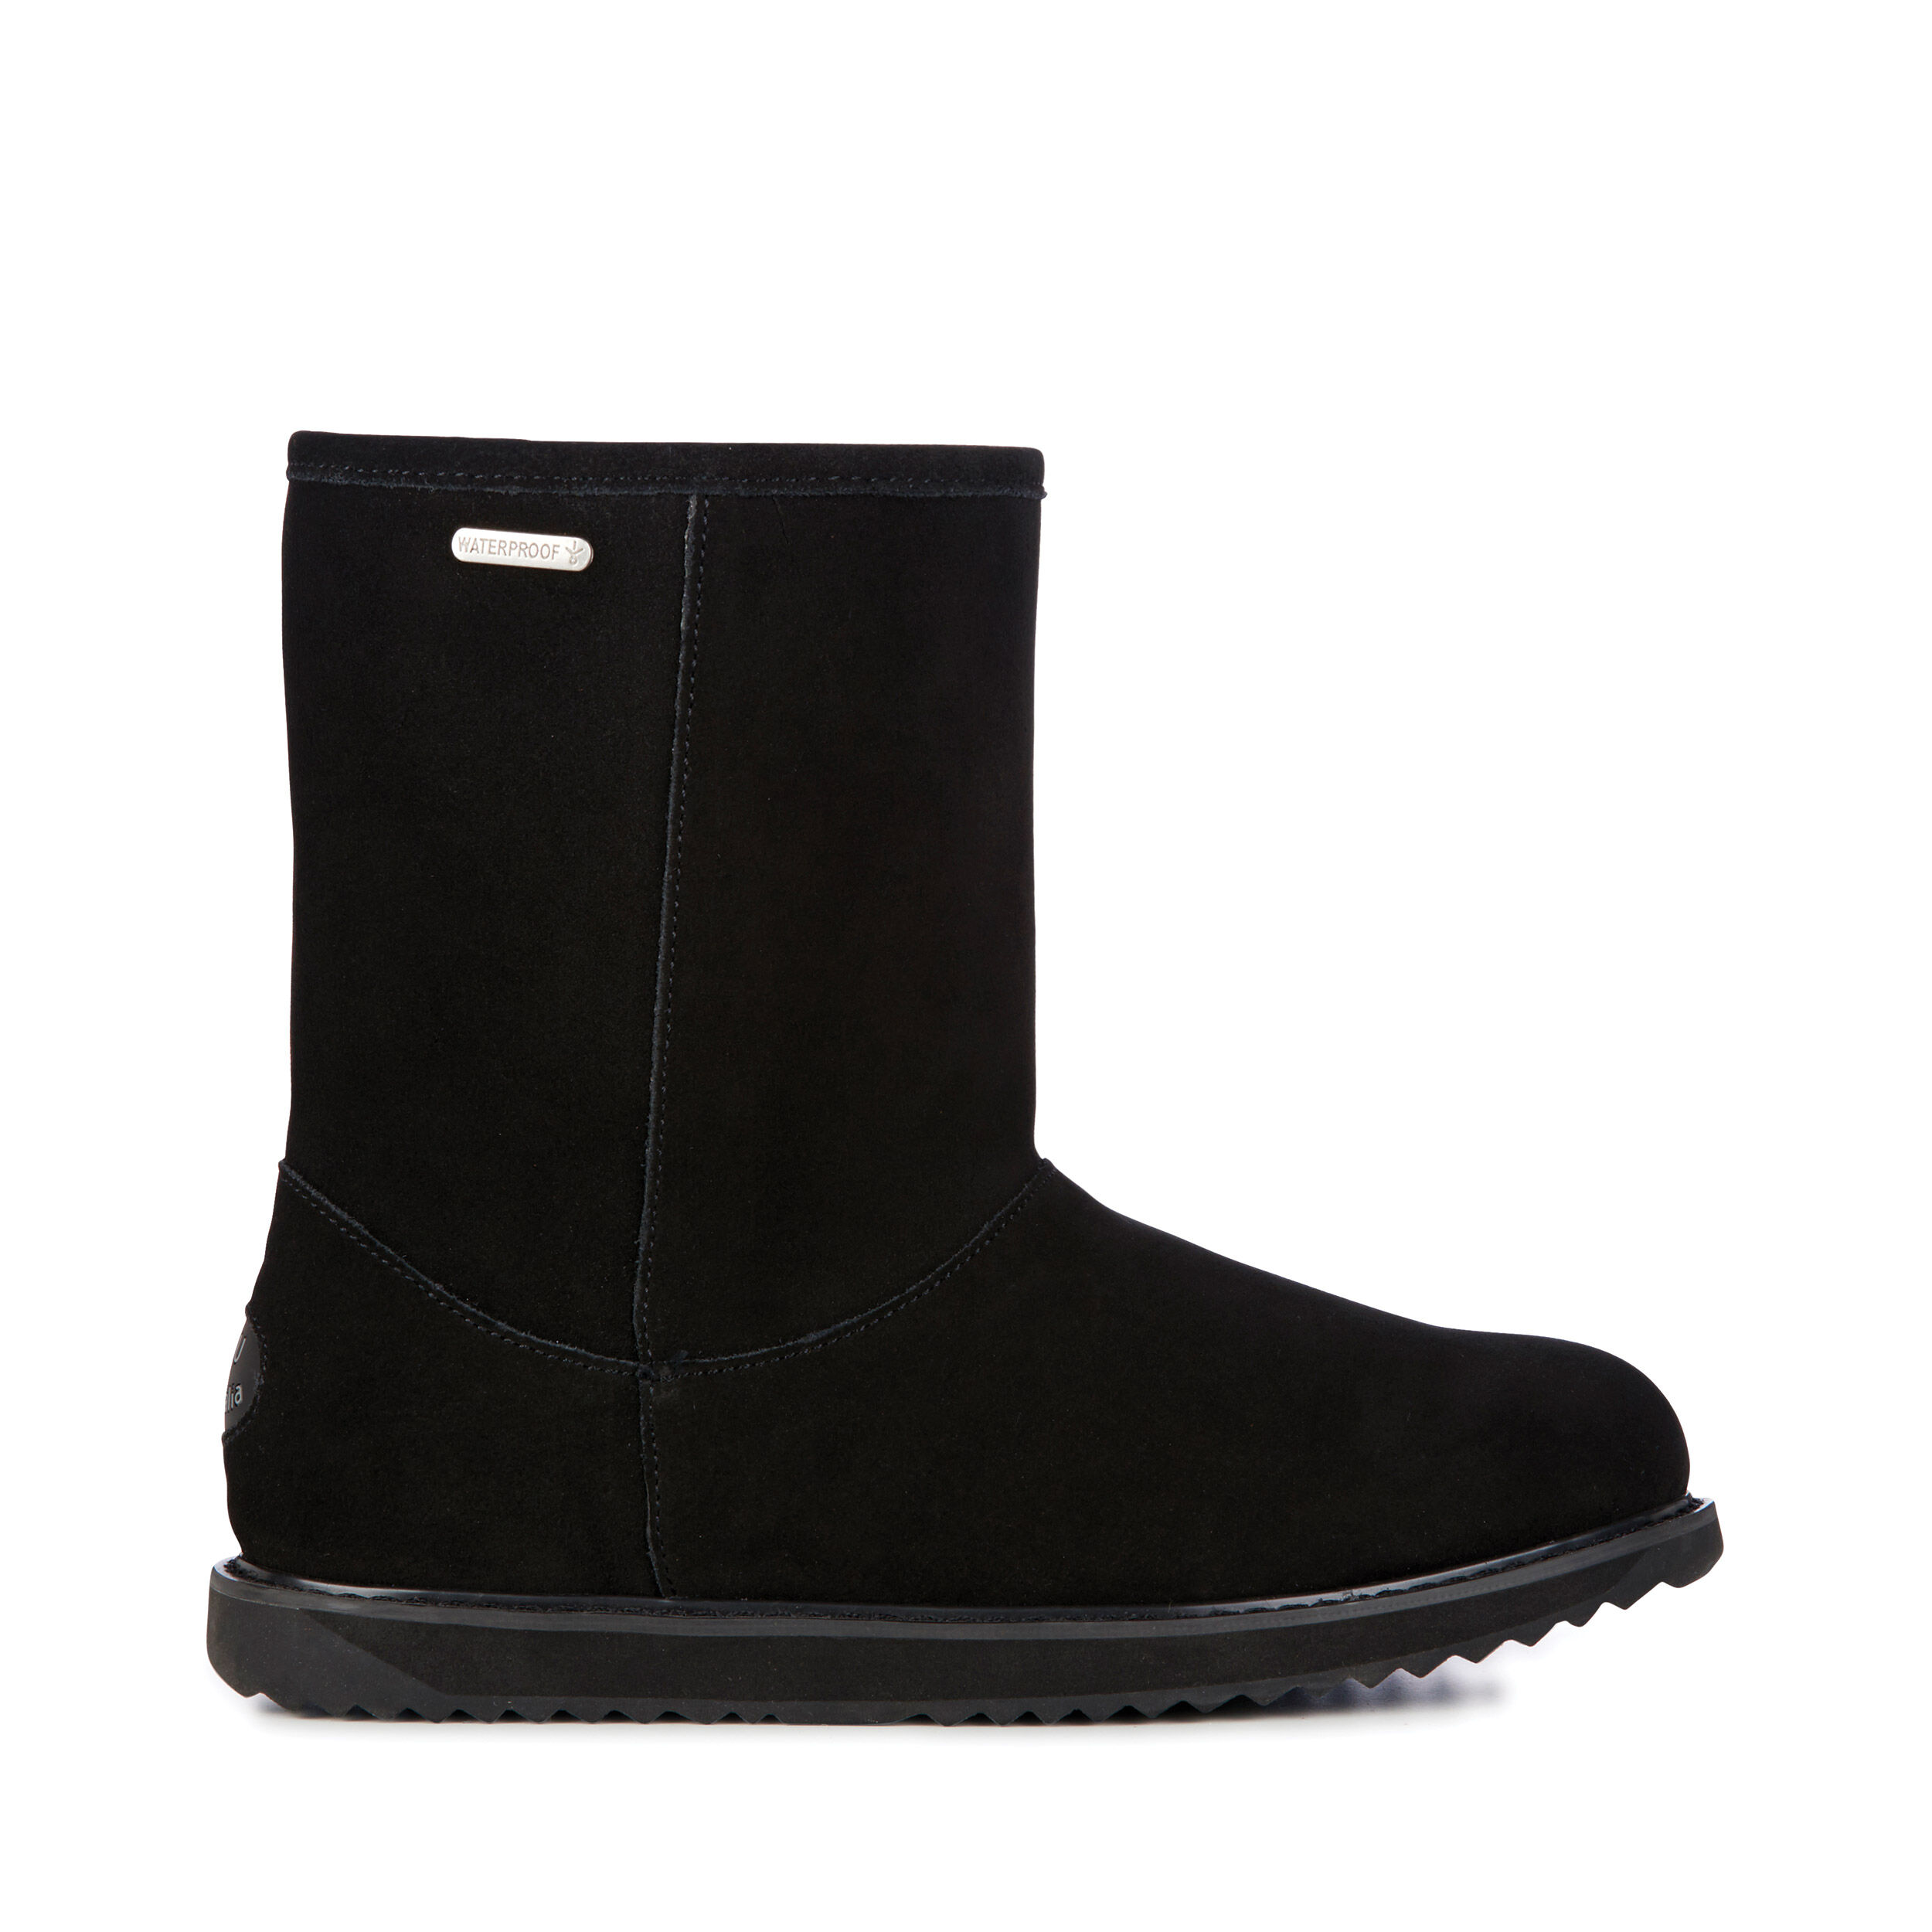 waterproof sheepskin boots